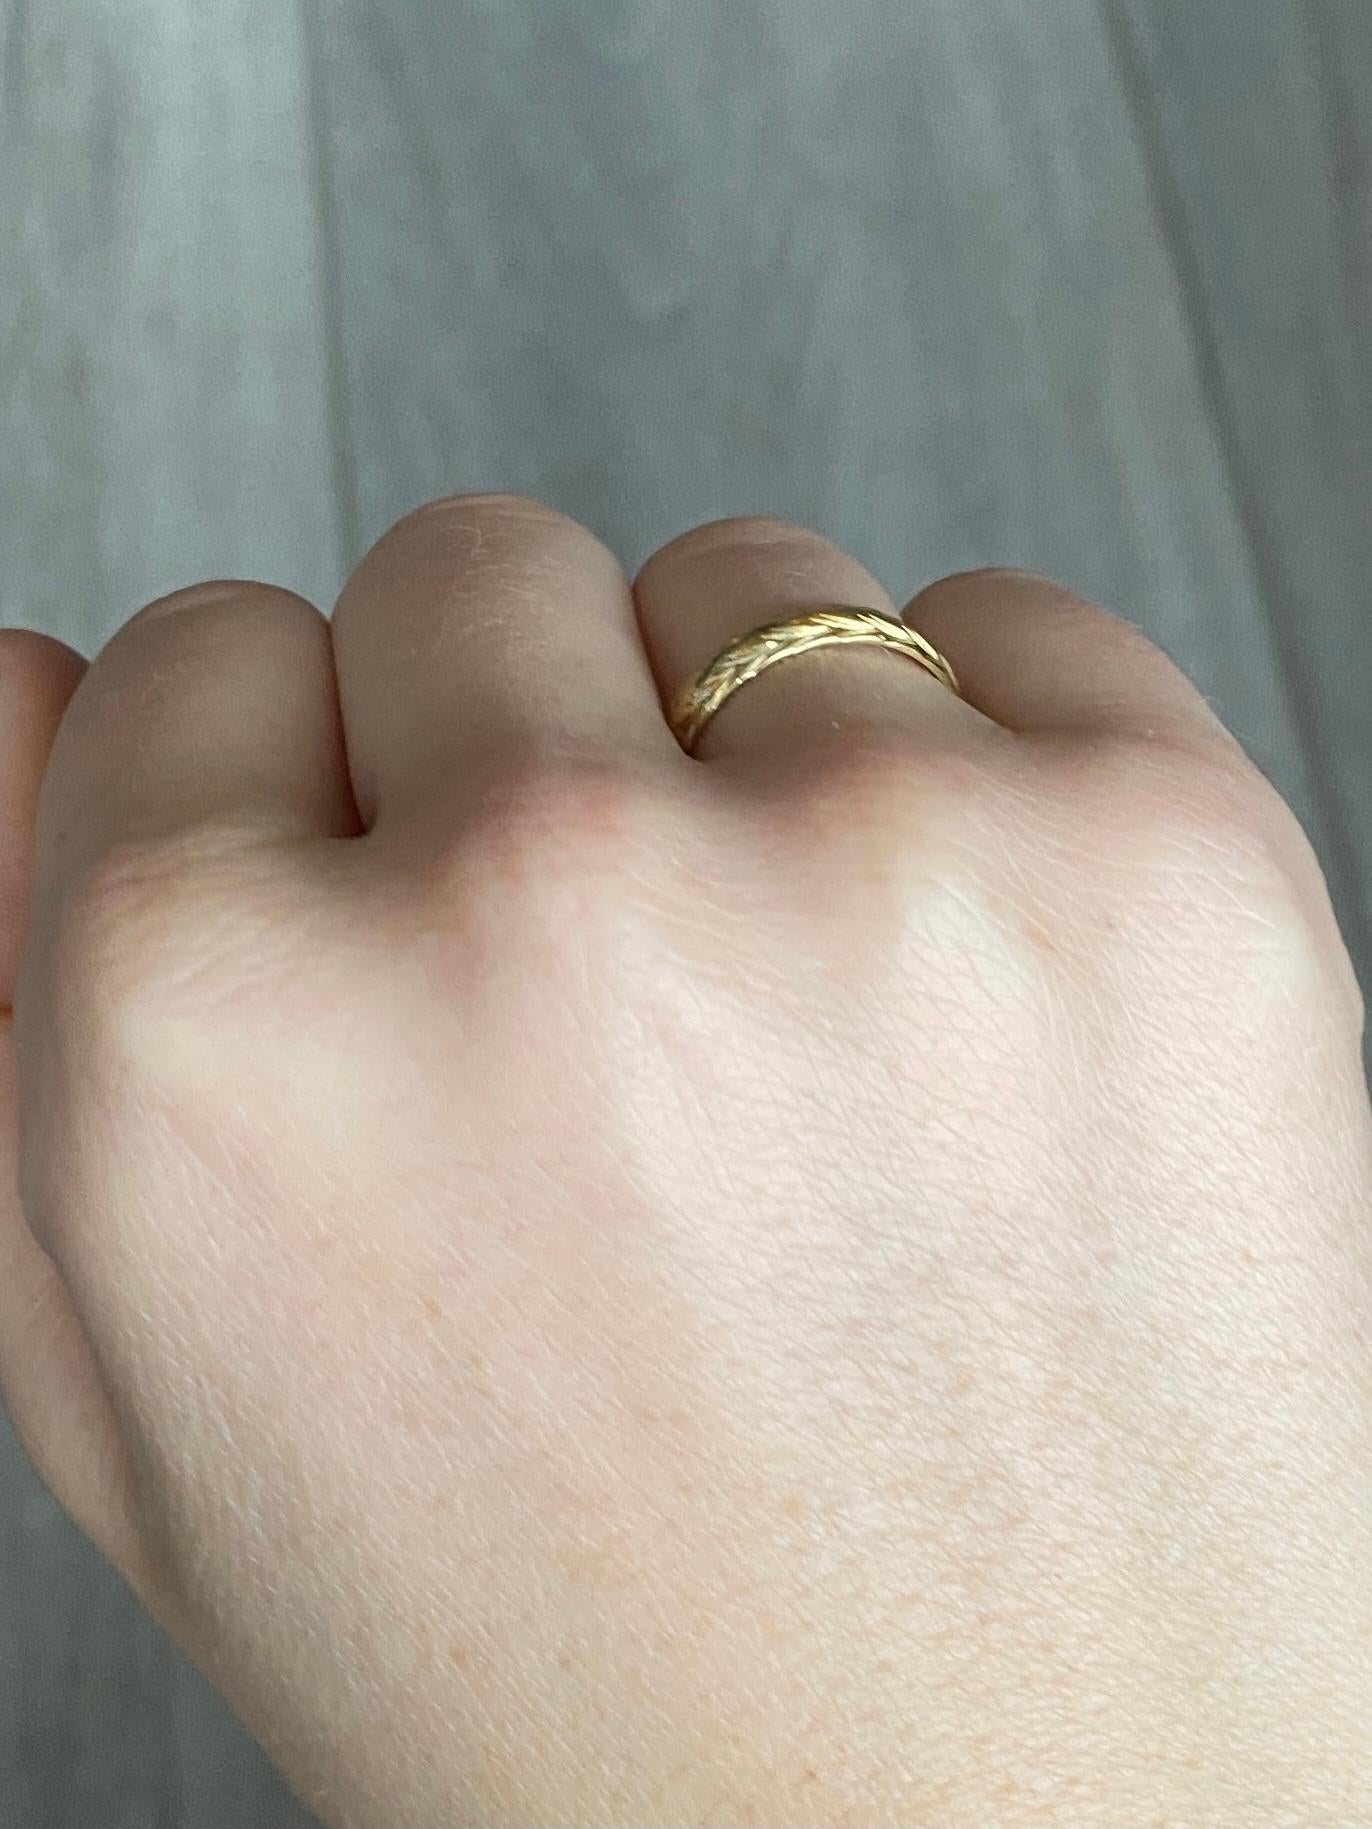 Die tiefe Gravur auf diesem 18-karätigen Goldband ist wunderschön. Dieser Ring eignet sich sowohl für die Hochzeit als auch für das tägliche Tragen. Vollständig gestempelt Sheffield 1983.

Ring Größe: N oder 6 3/4 
Bandbreite: 4mm

Gewicht: 2,4 g